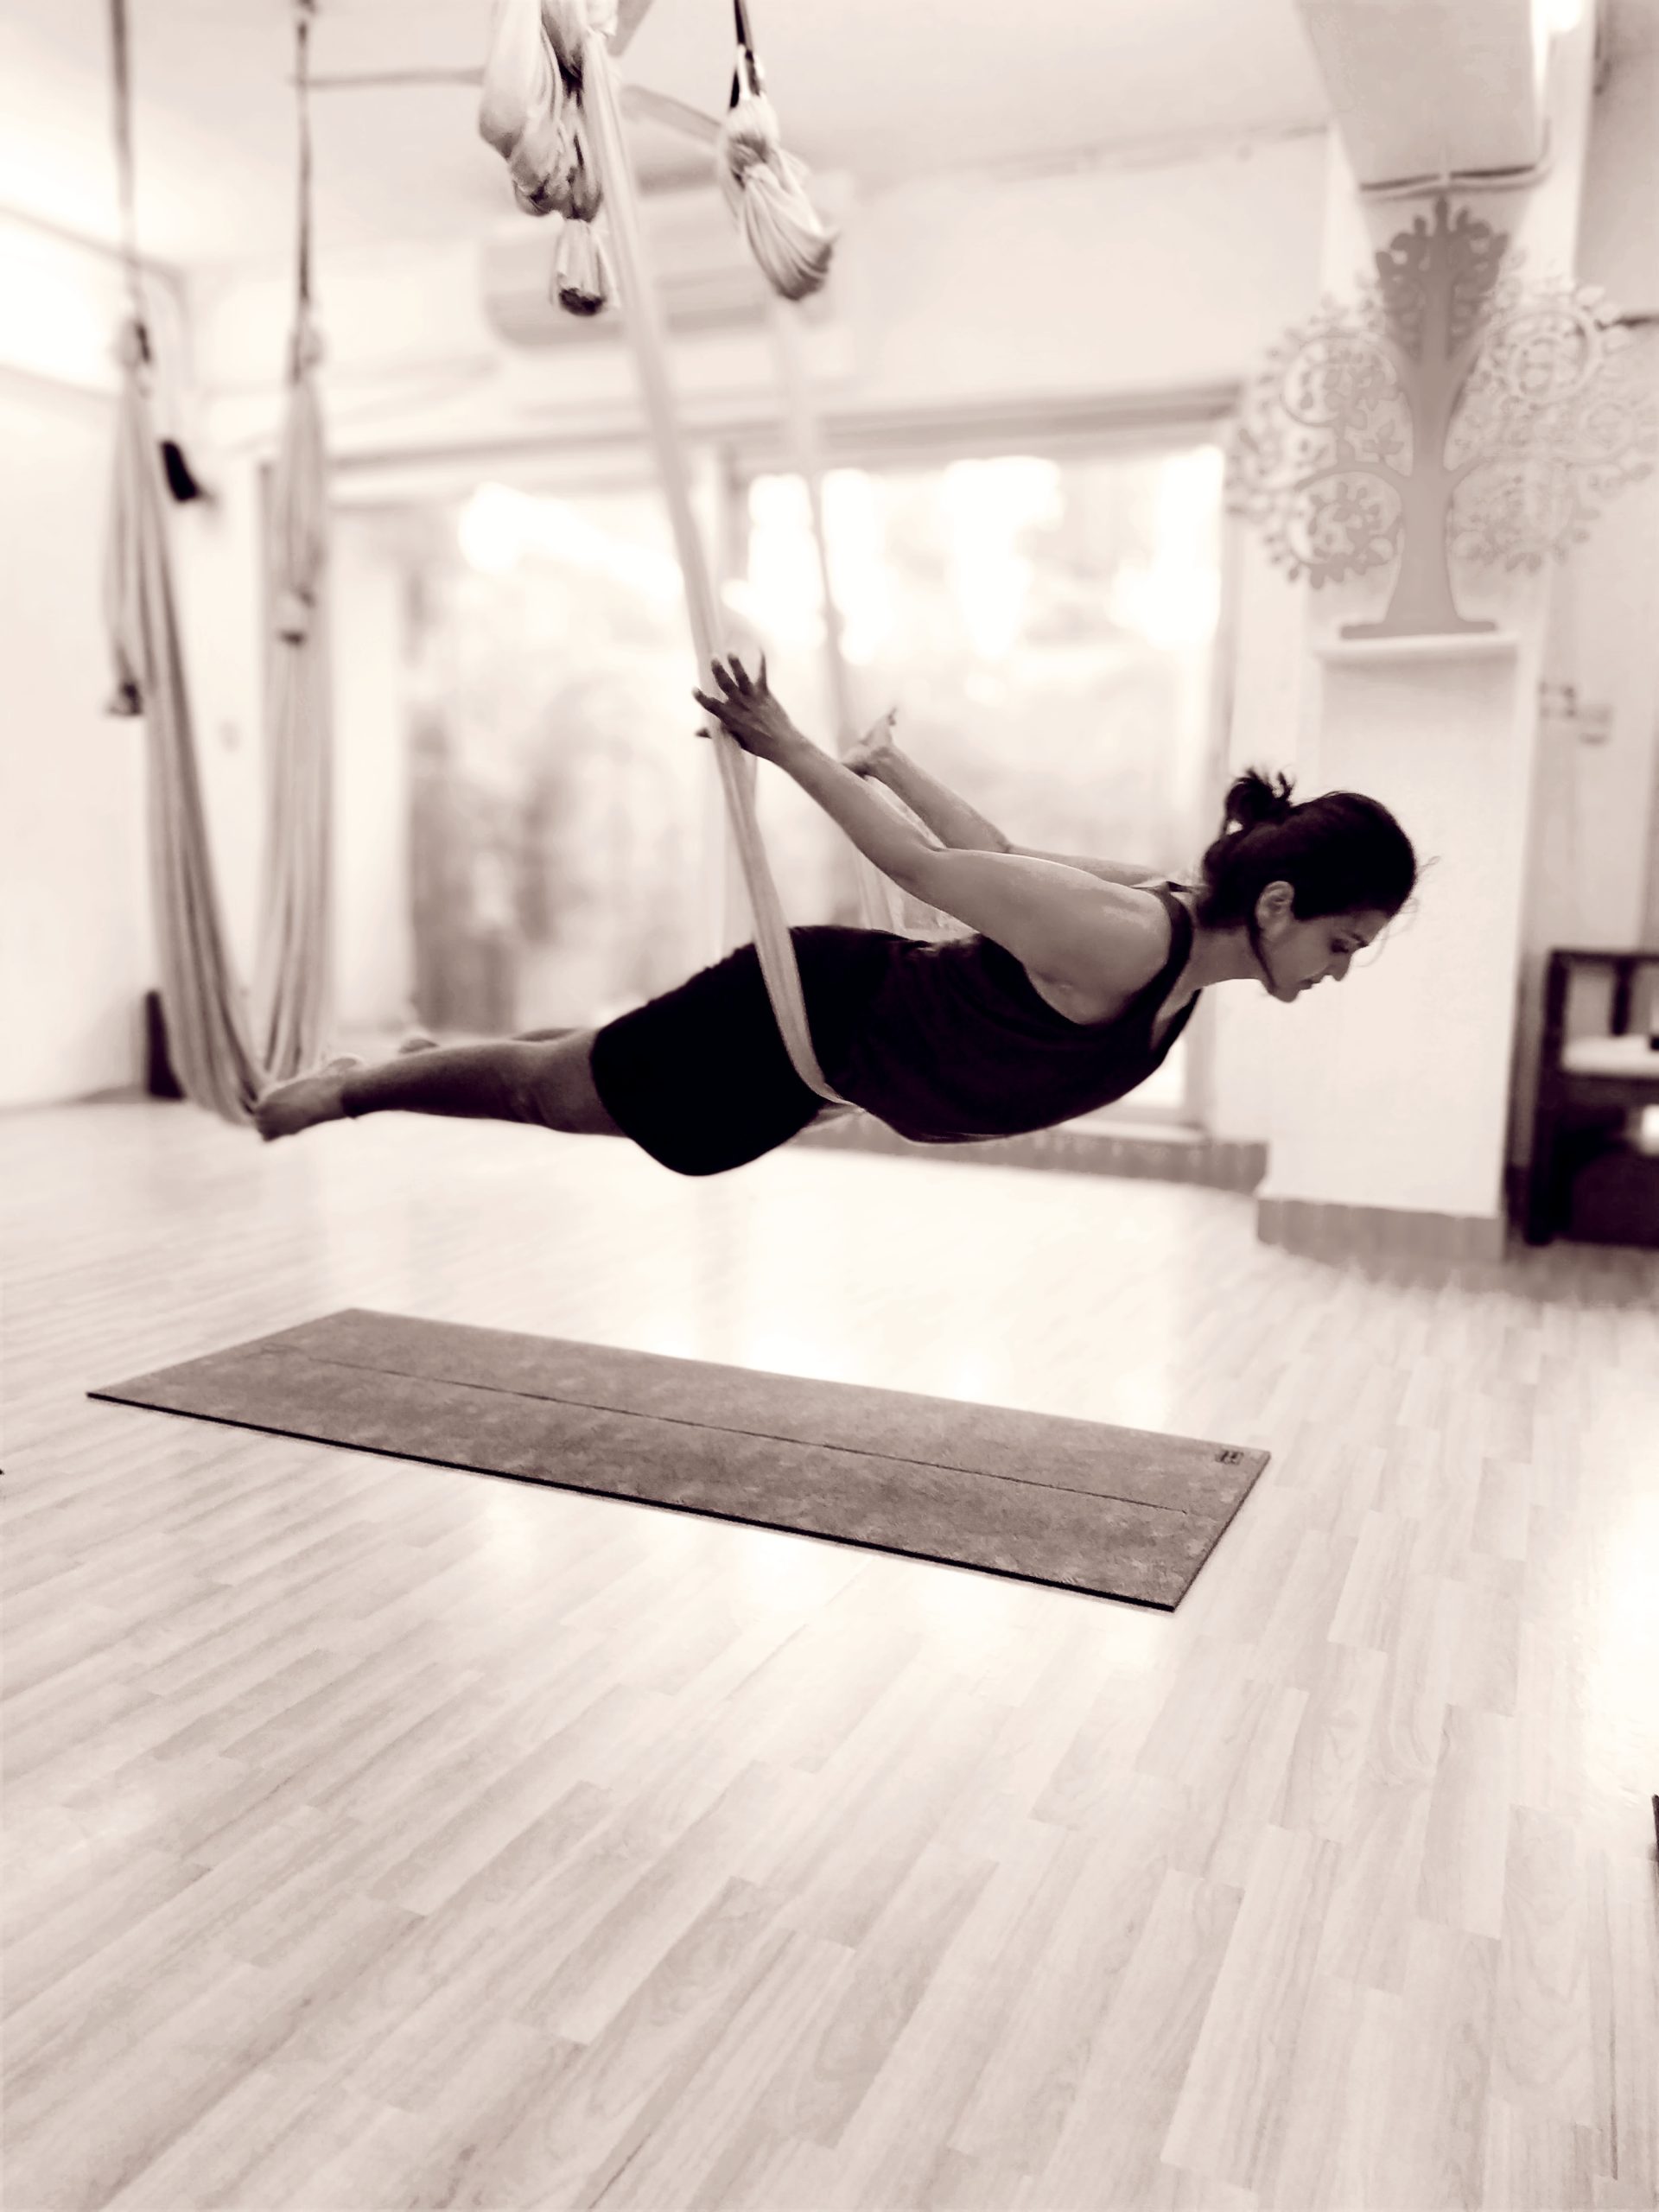 aerial yoga teacher
sneha desai